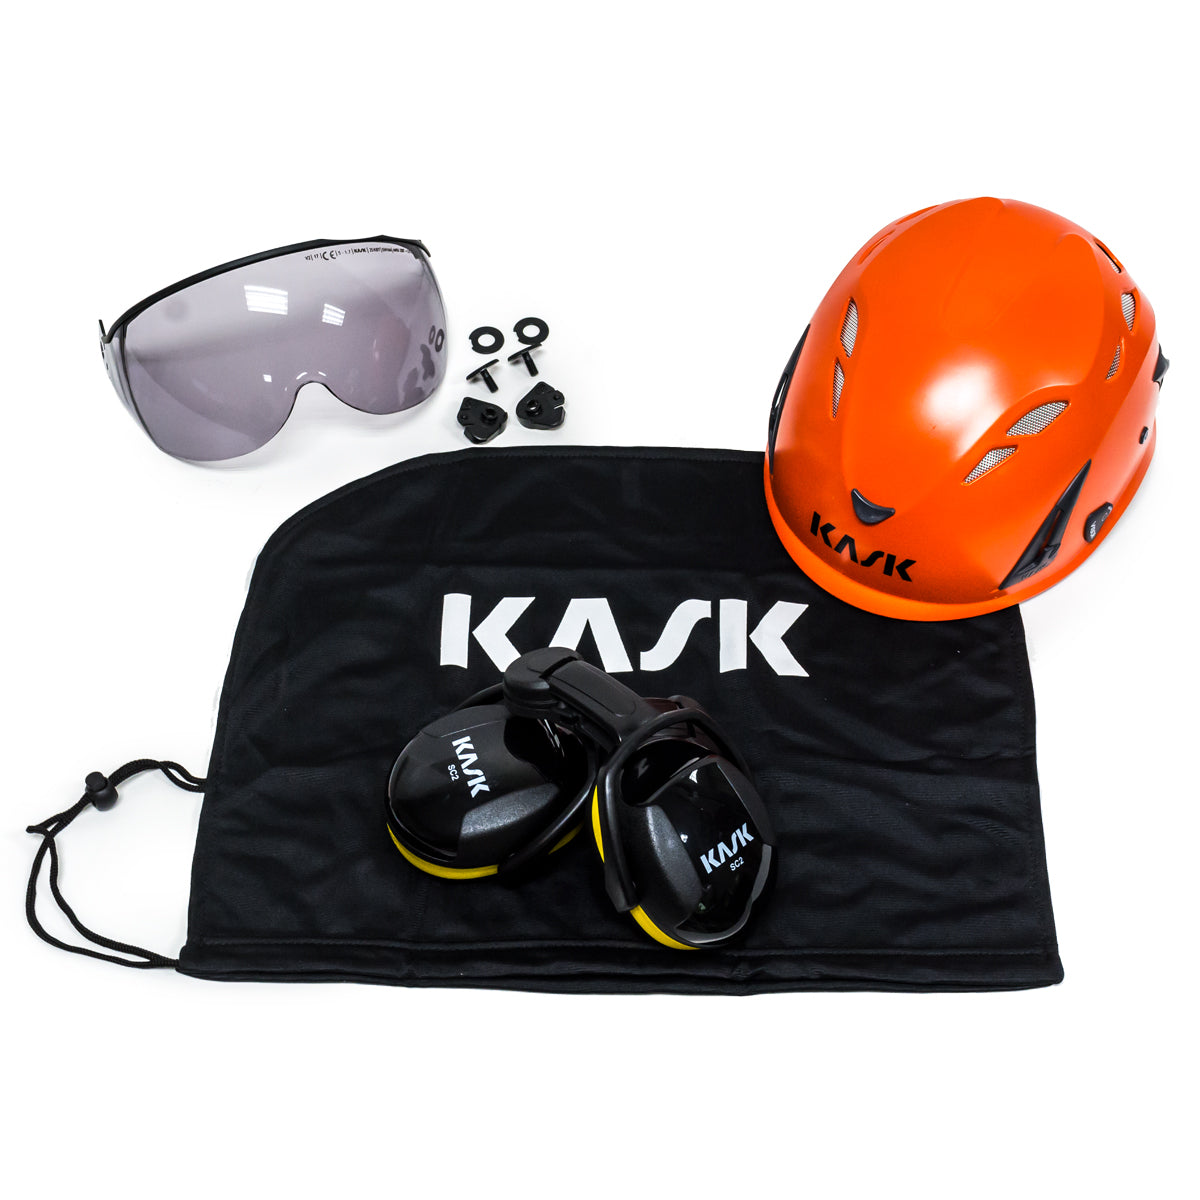 Kask Professional Arborist Orange Super Plasma Helmet Kit